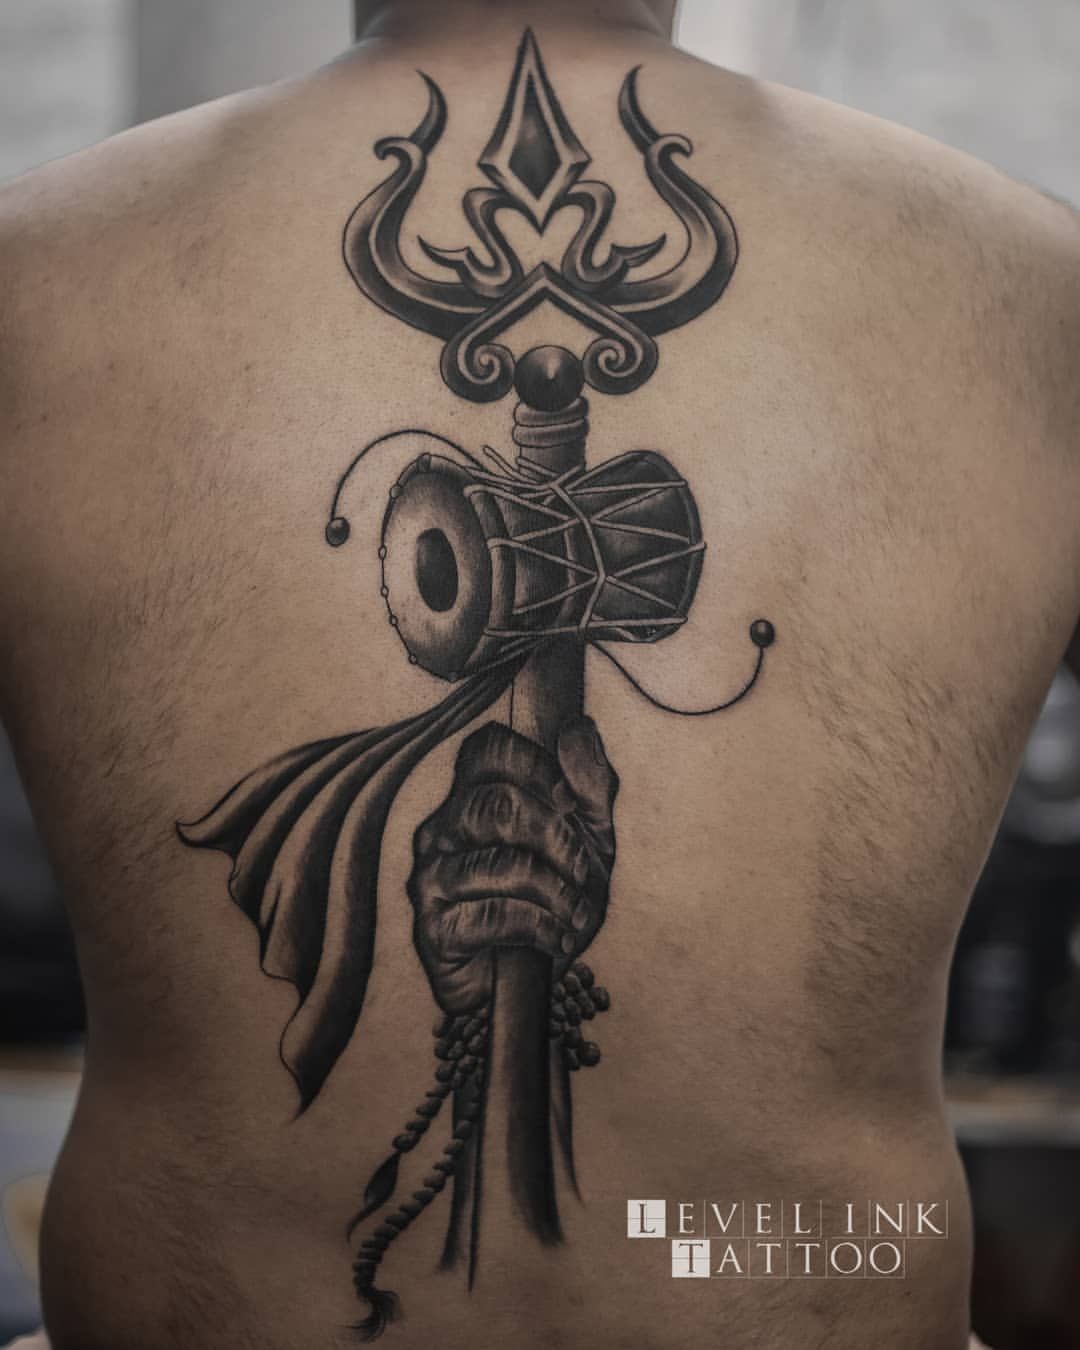 Trishul tattoo done by Billu tattoo at level ink tattoos  Shiva tattoo  design Trishul tattoo designs Shiva tattoo